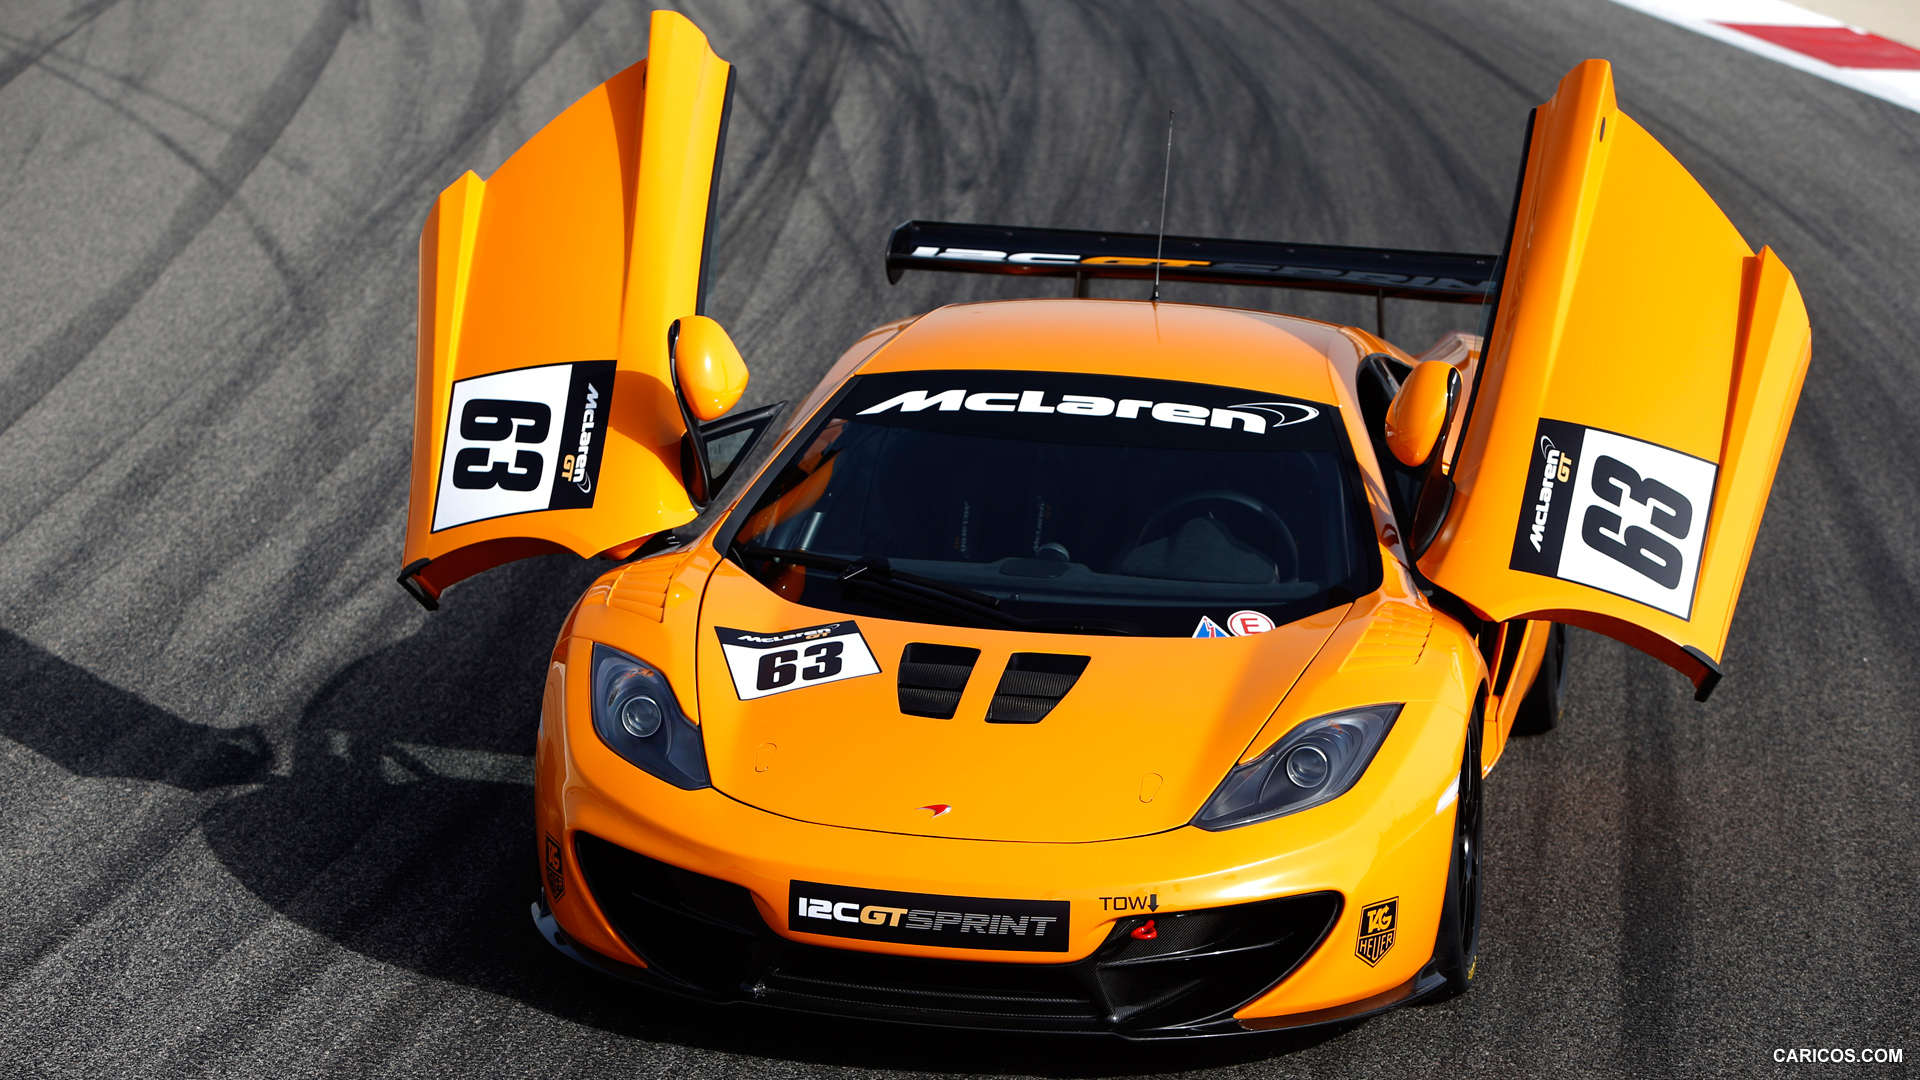 2014 McLaren 12C GT Sprint Doors Up - Front, #6 of 9